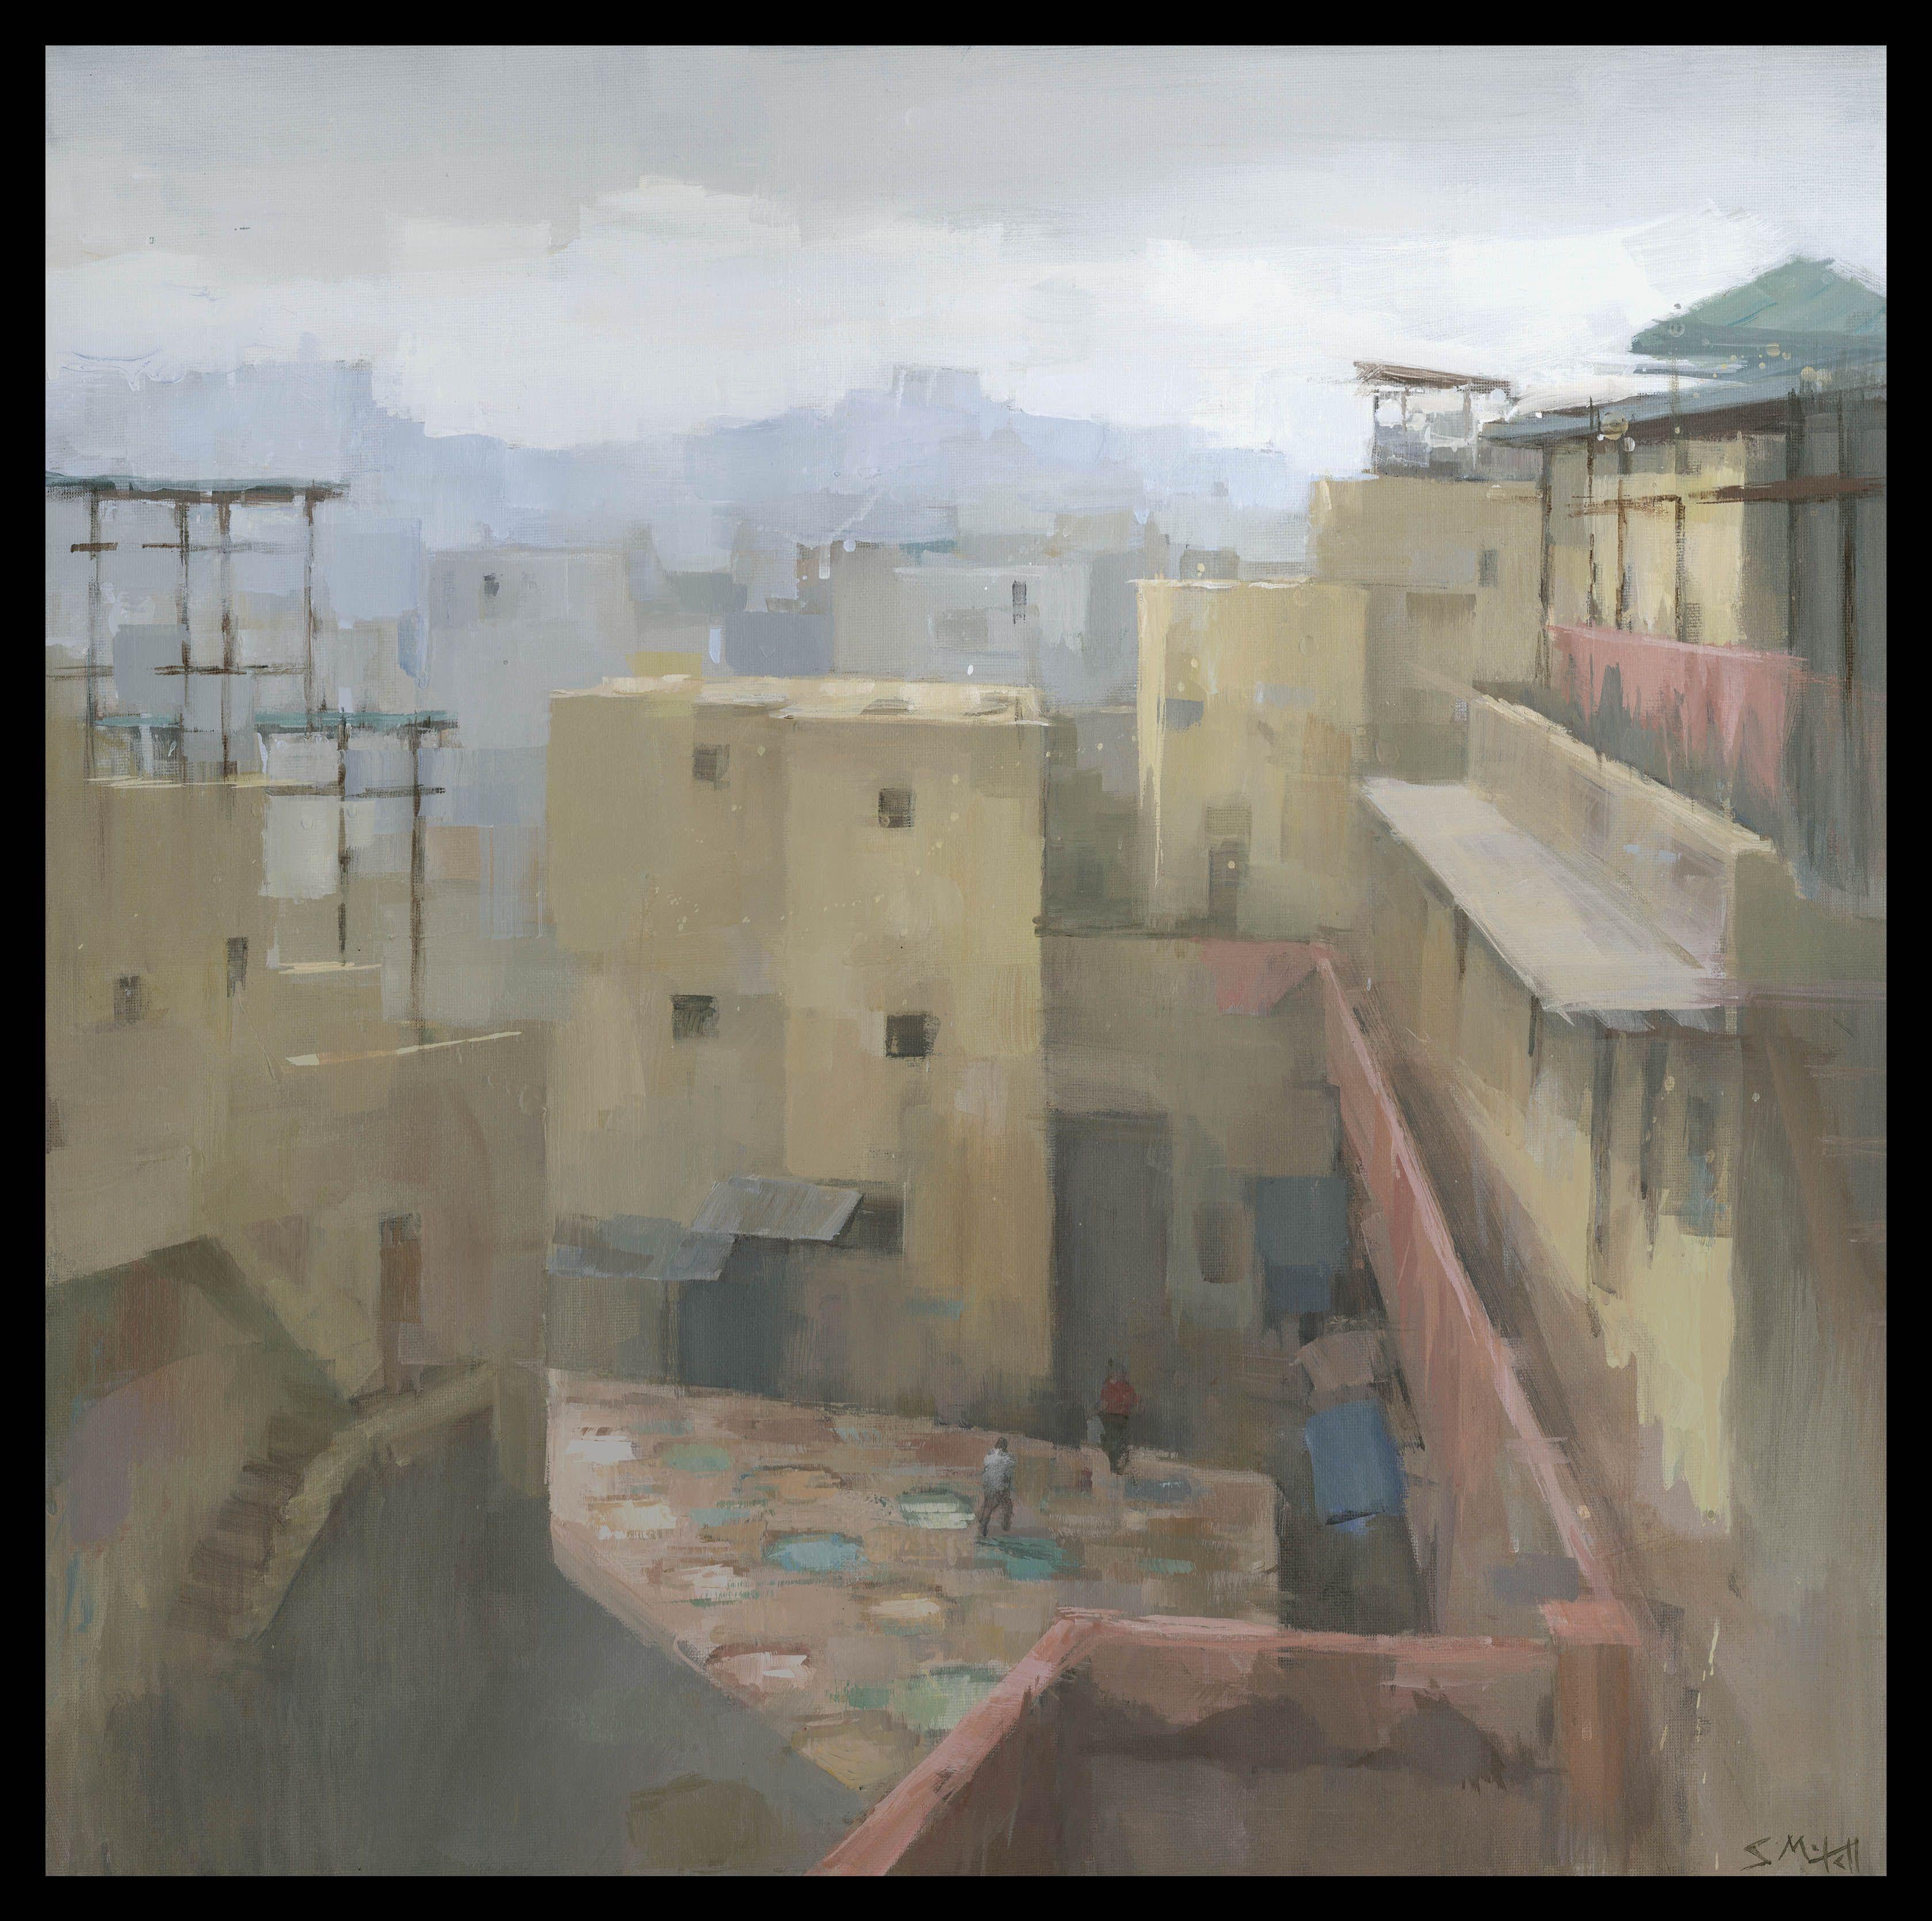 Fez Tannery, Maroc, Peinture, Acrylique sur Toile - Impressionnisme Painting par Stephen Mitchell